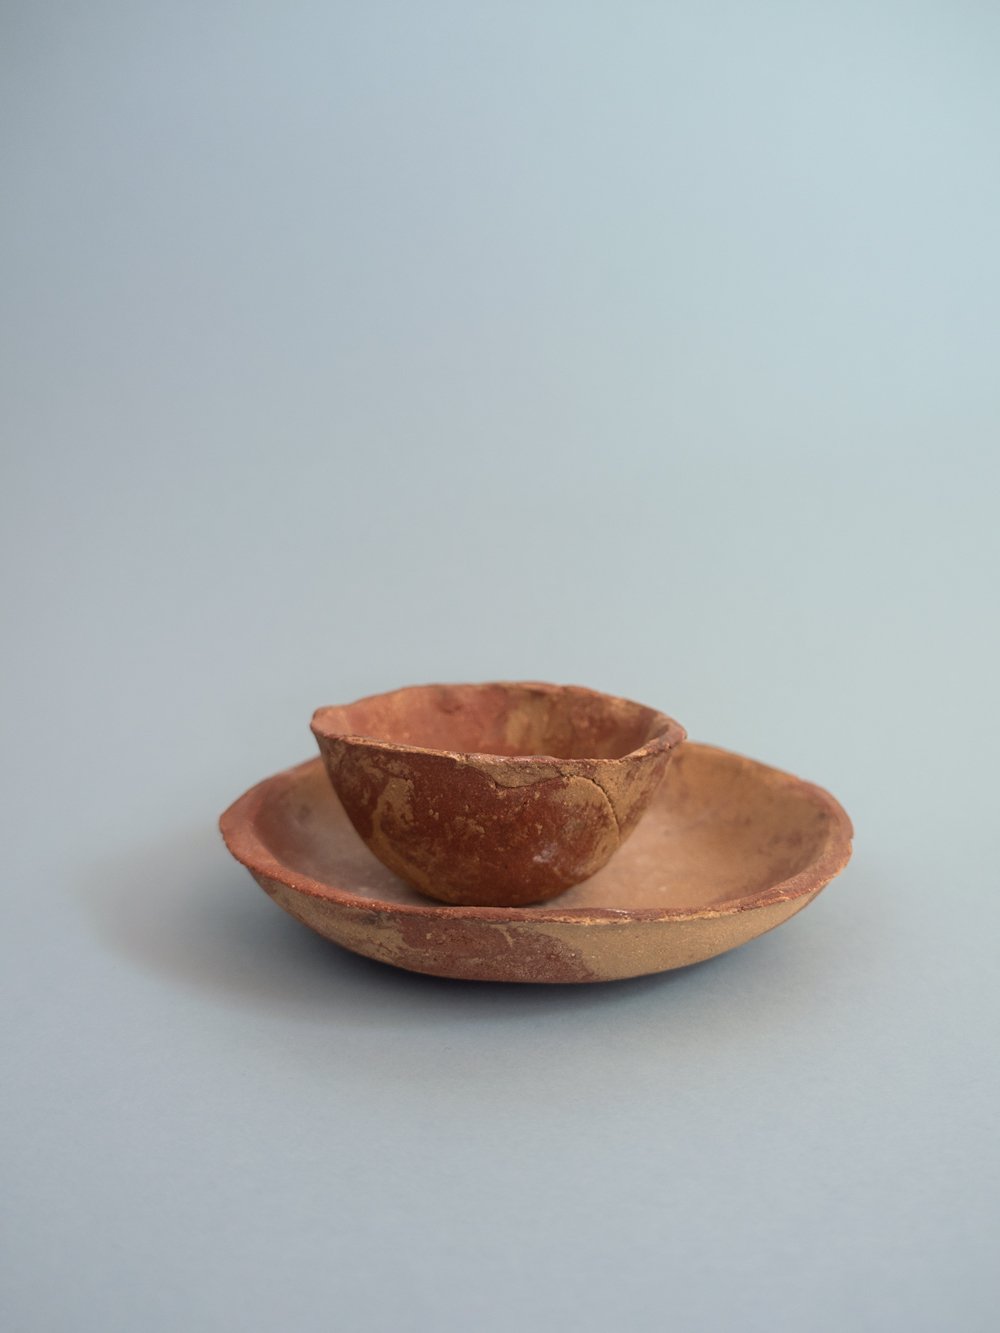 Image of ceramic set